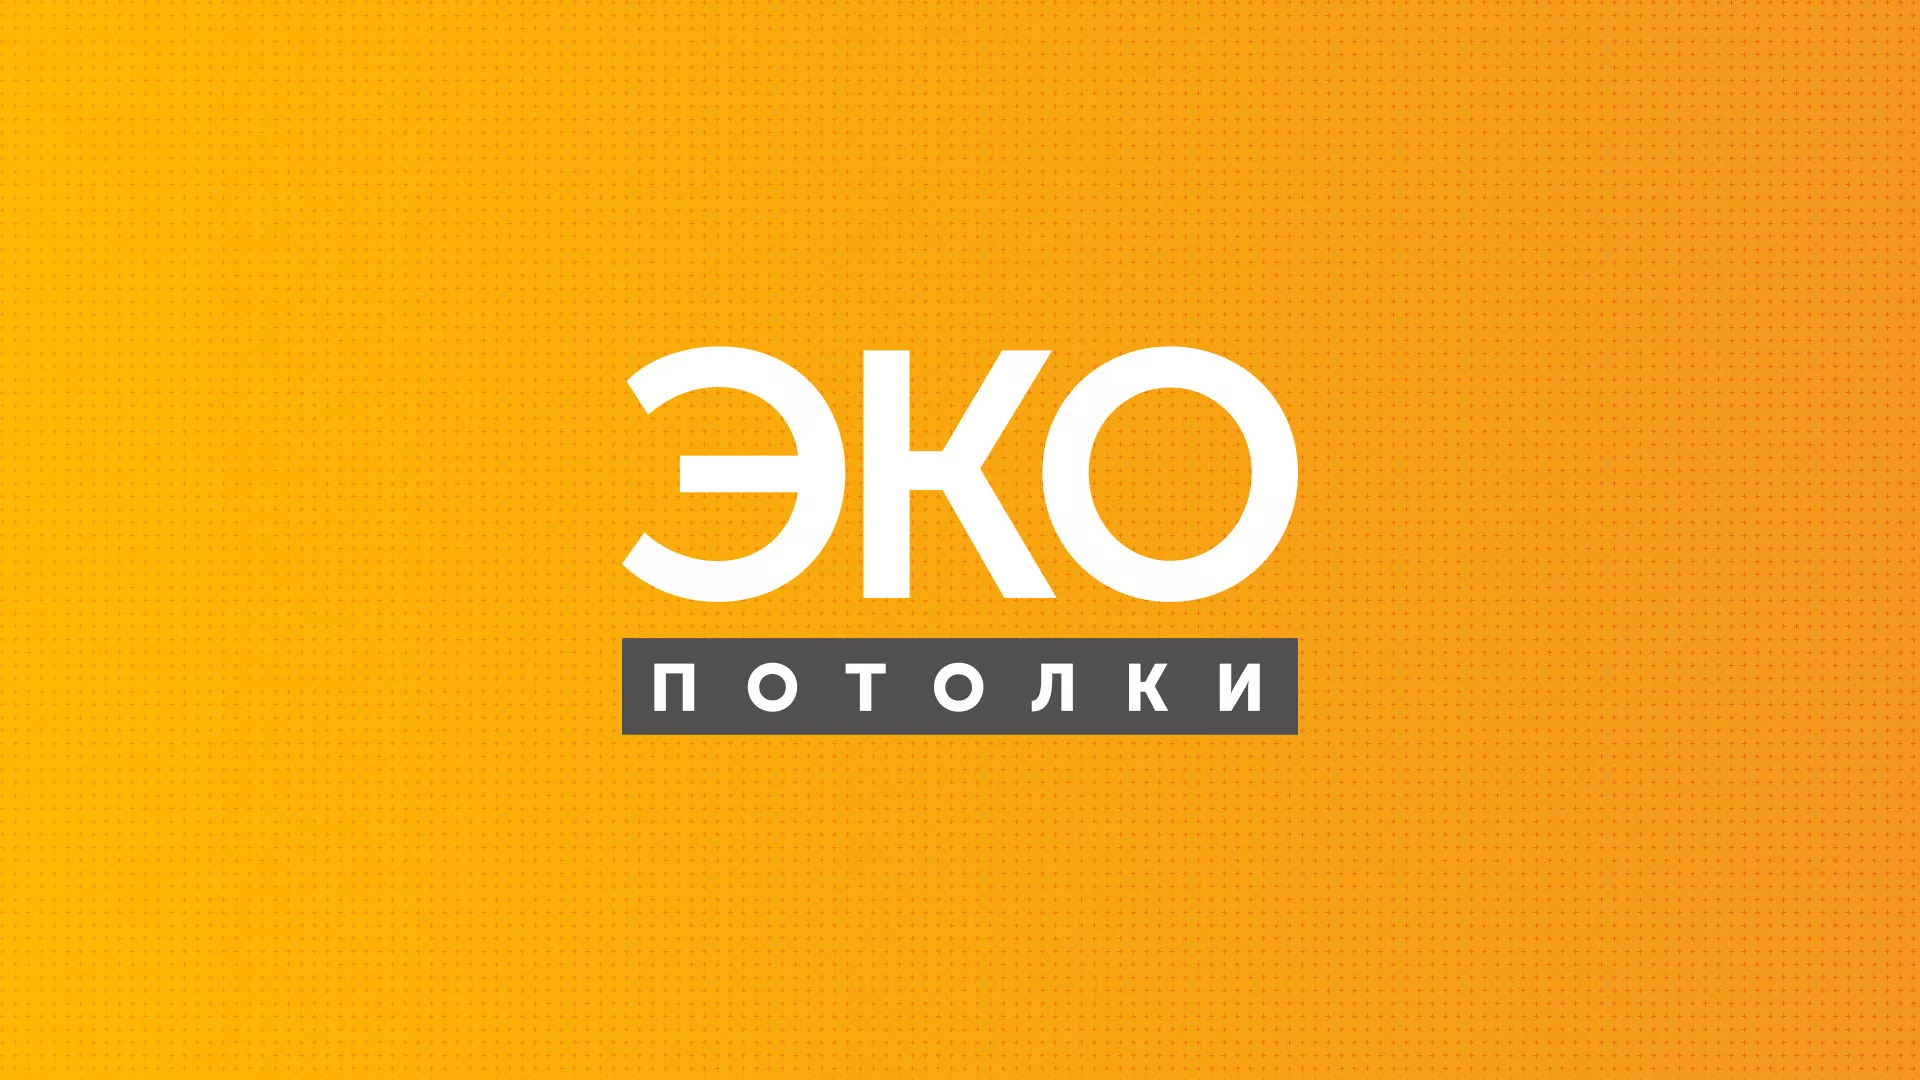 Разработка сайта по натяжным потолкам «Эко Потолки» в Климовске